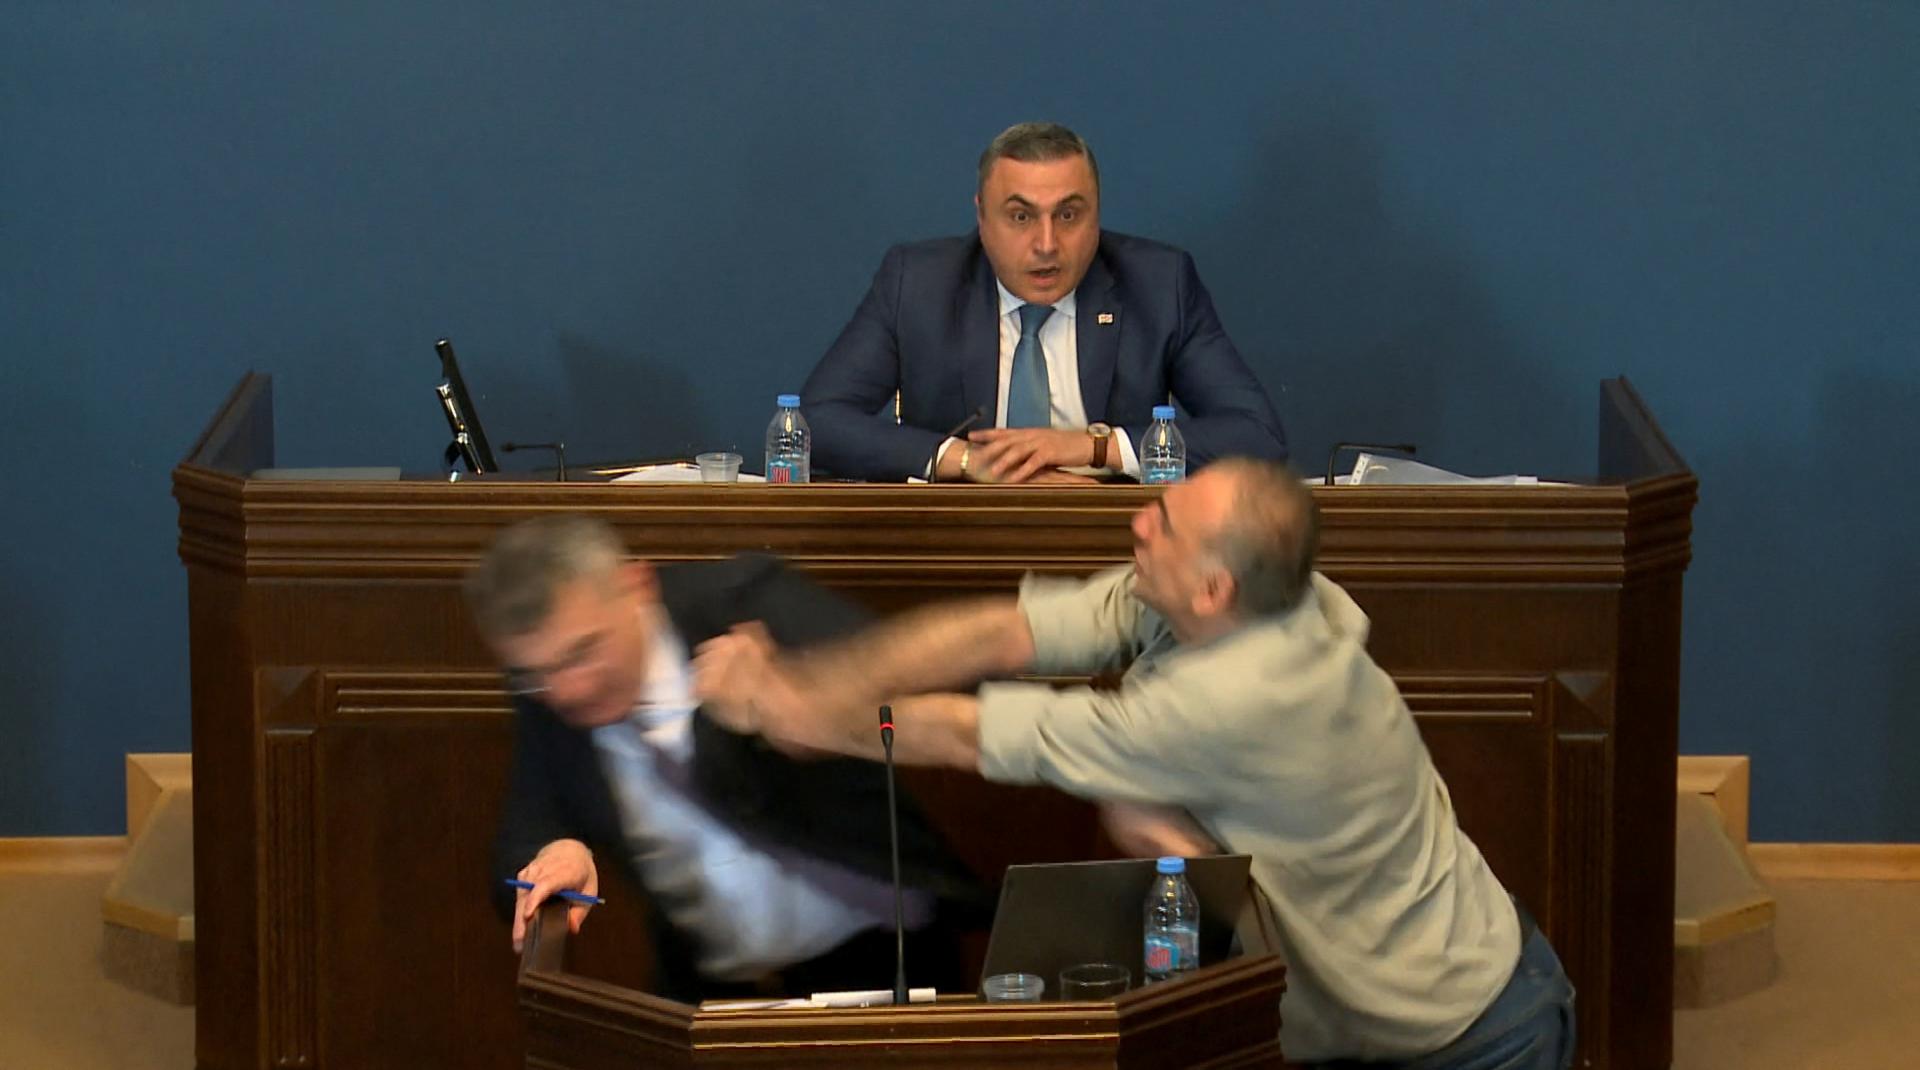 Potýčka v gruzínskom parlamente. Opozičný poslanec udrel člena vlády kvôli zákonu o zahraničných agentoch